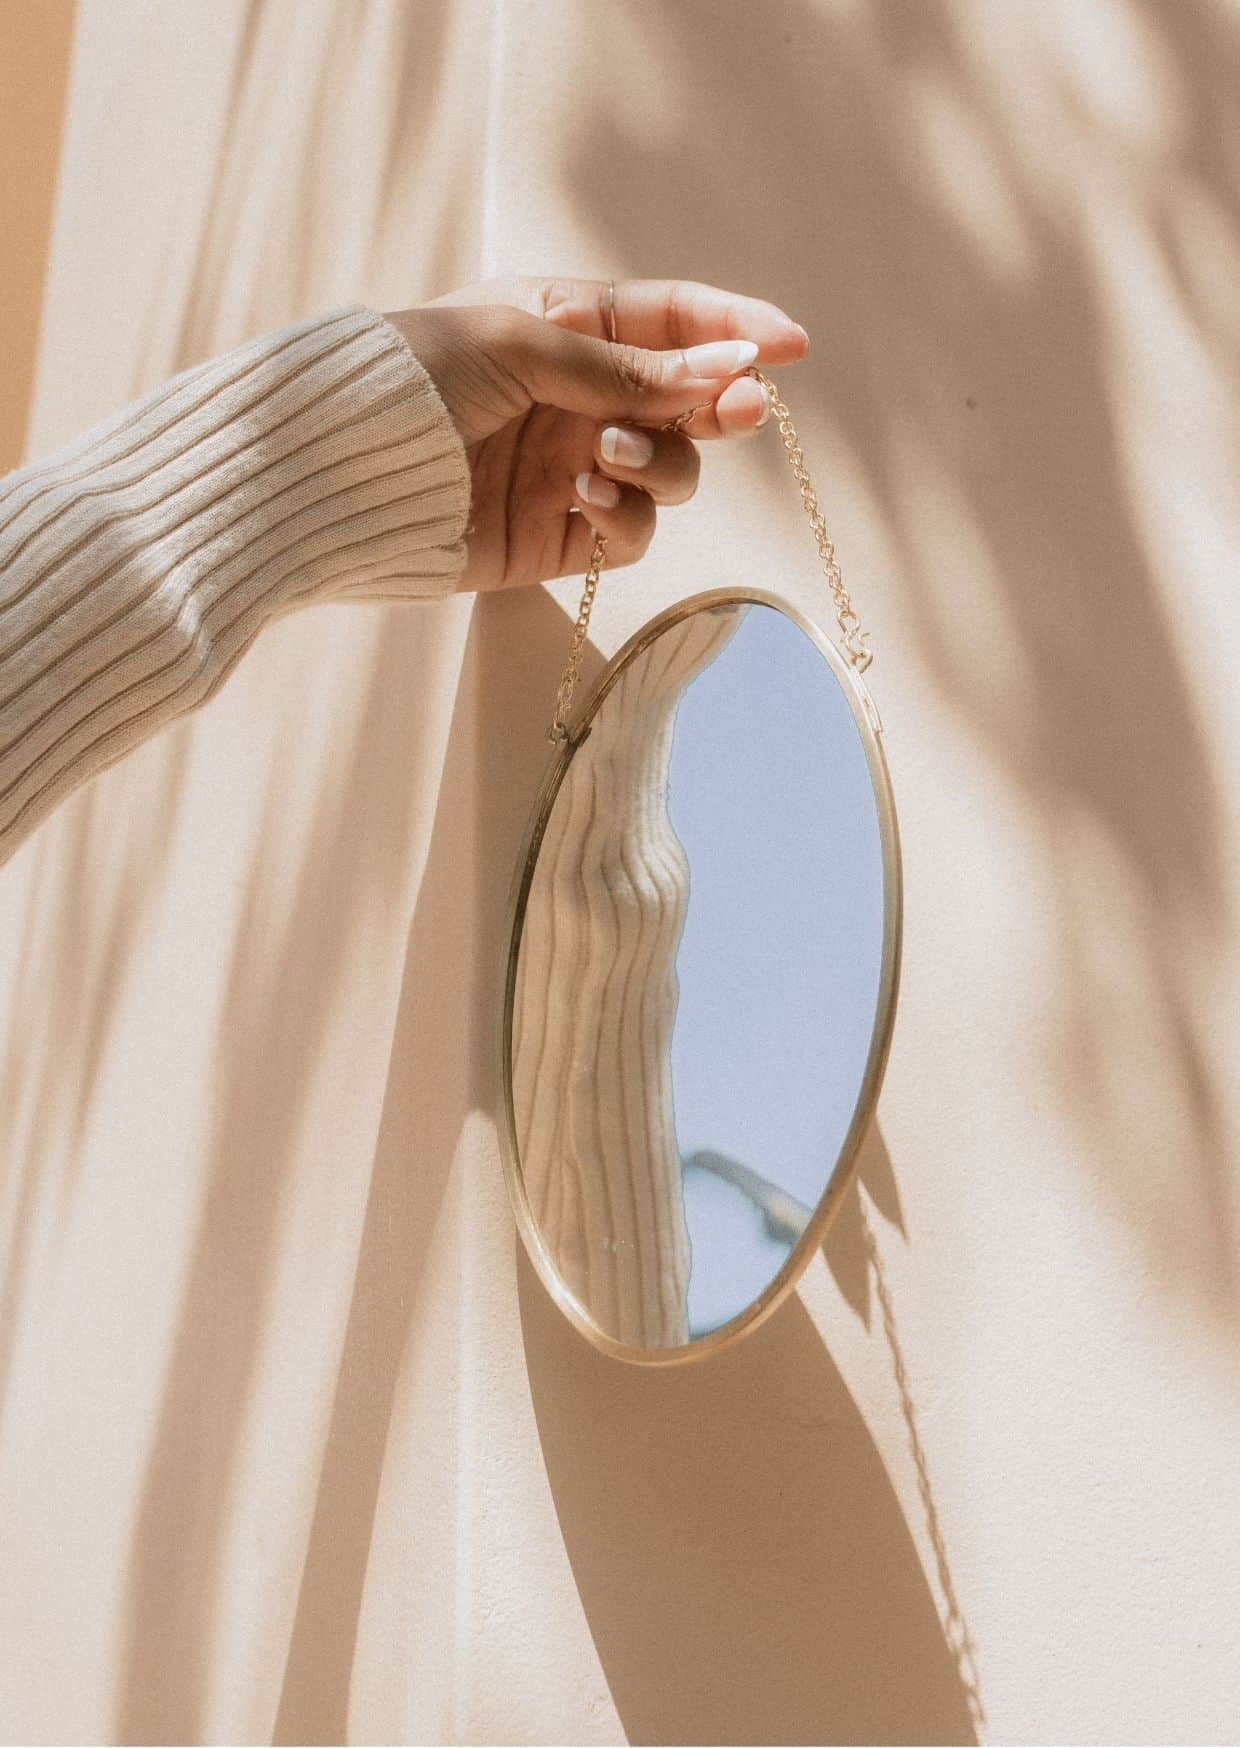 einen Frauenhand hält einen ovalen Spiegel an einer goldenen Kette. Alles ist in gebrochenem Weiß gehalten